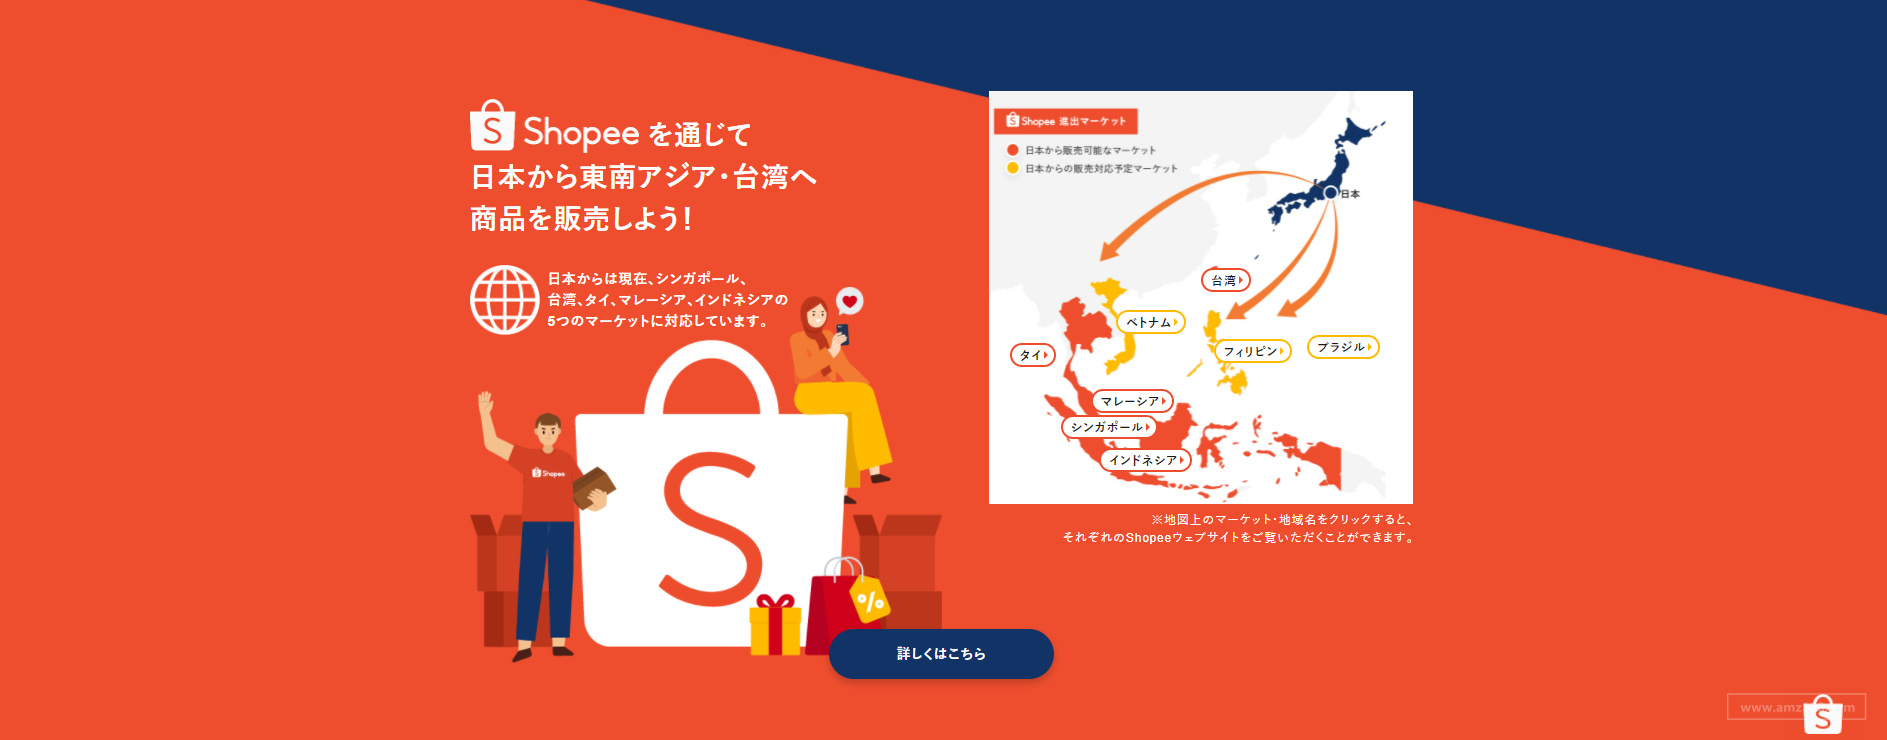 电商平台Shopee未来将向日本卖家开放越南、巴西等站点